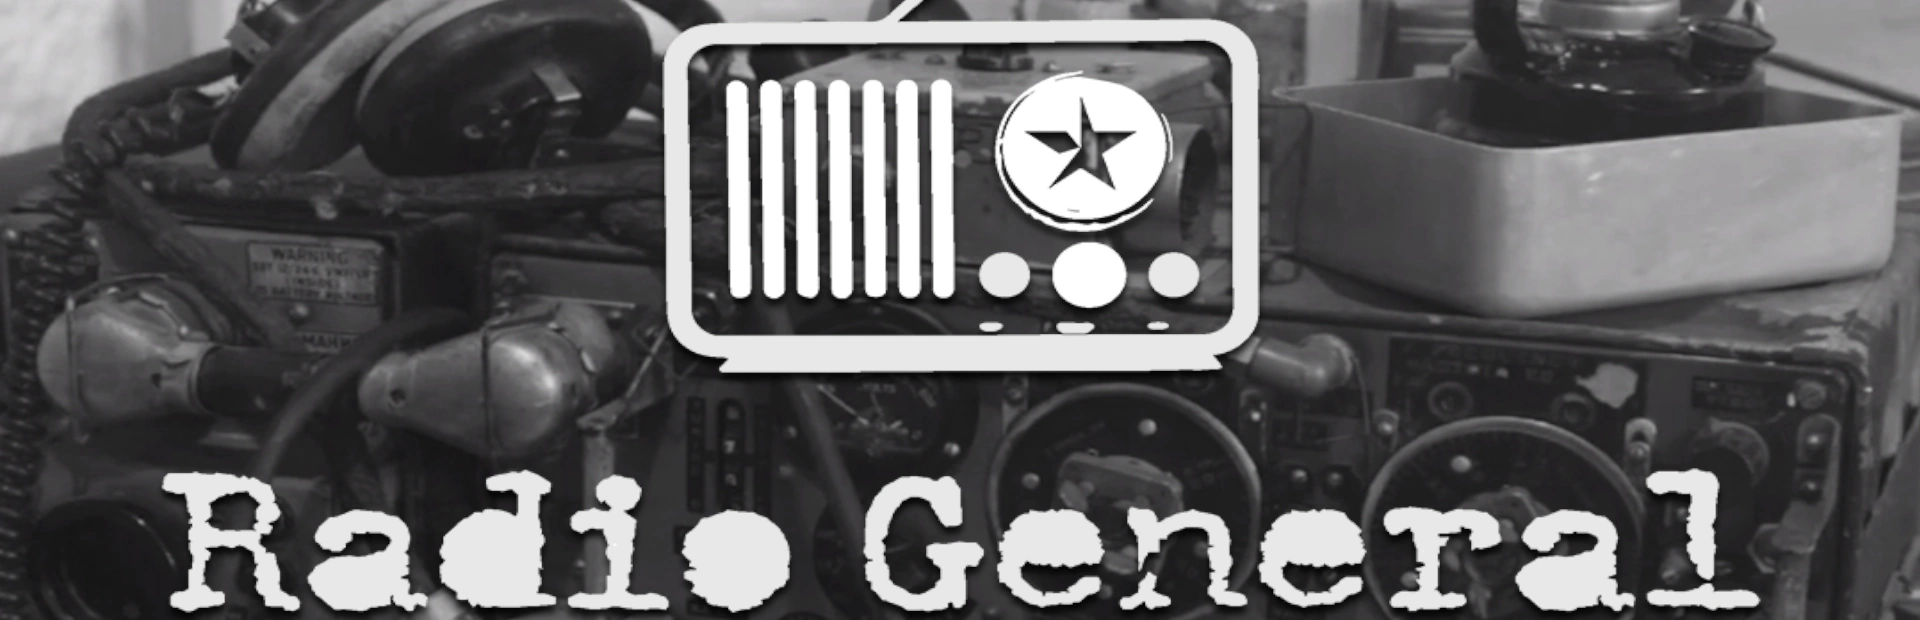 دانلود بازی Radio General برای کامپیوتر | گیمباتو